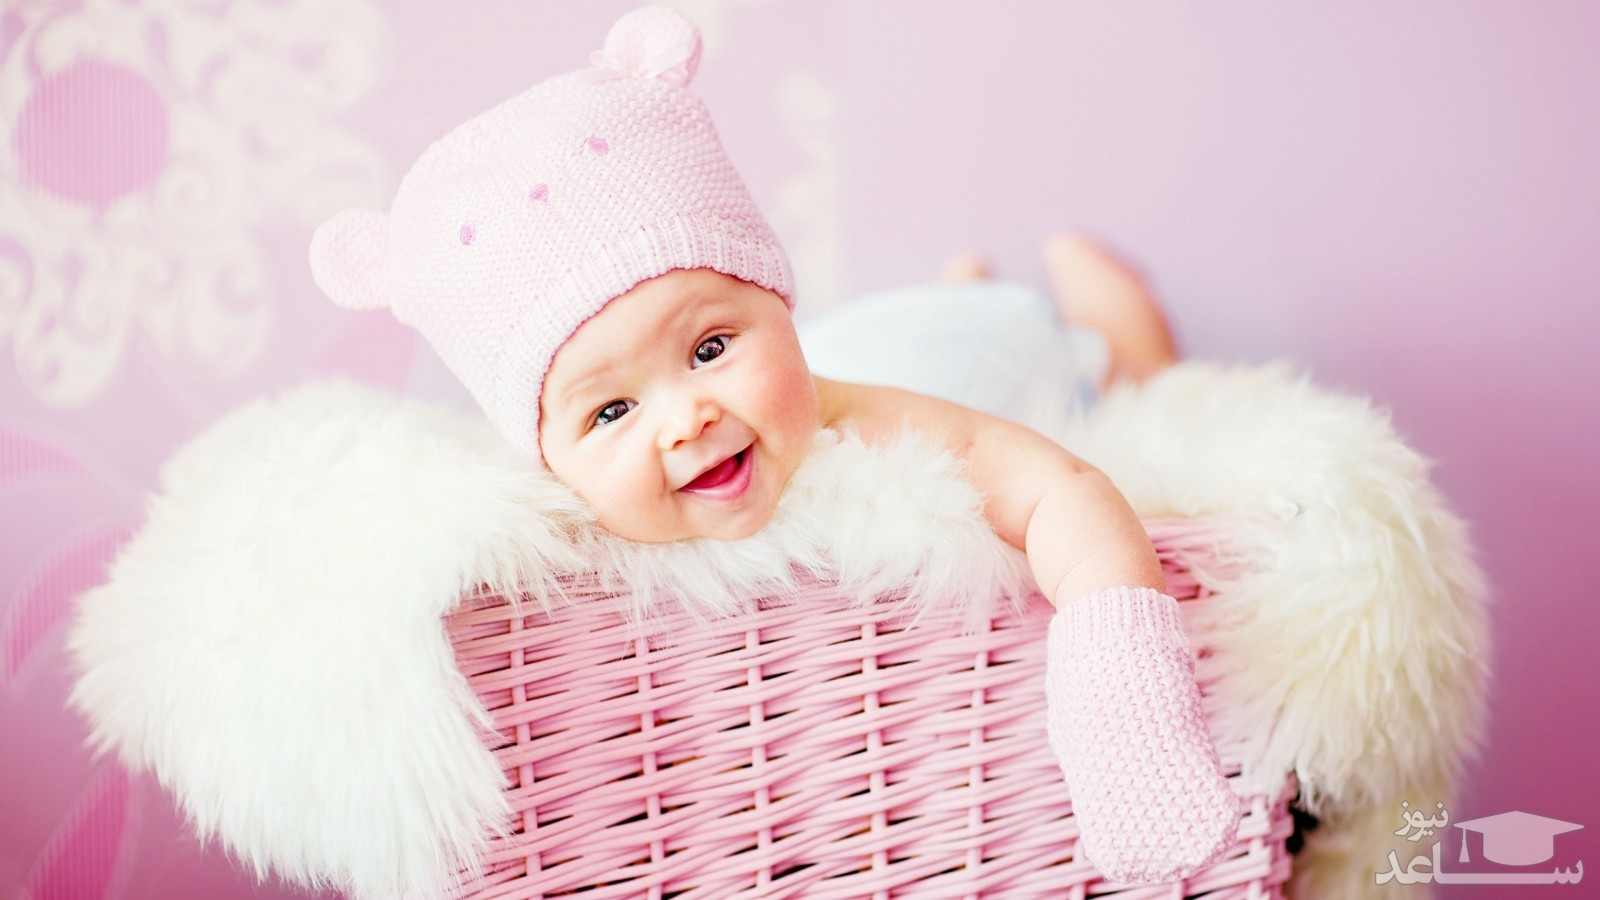 راهنمای انتخاب زیباترین مدل های لباس برای تولد بچه ی شما